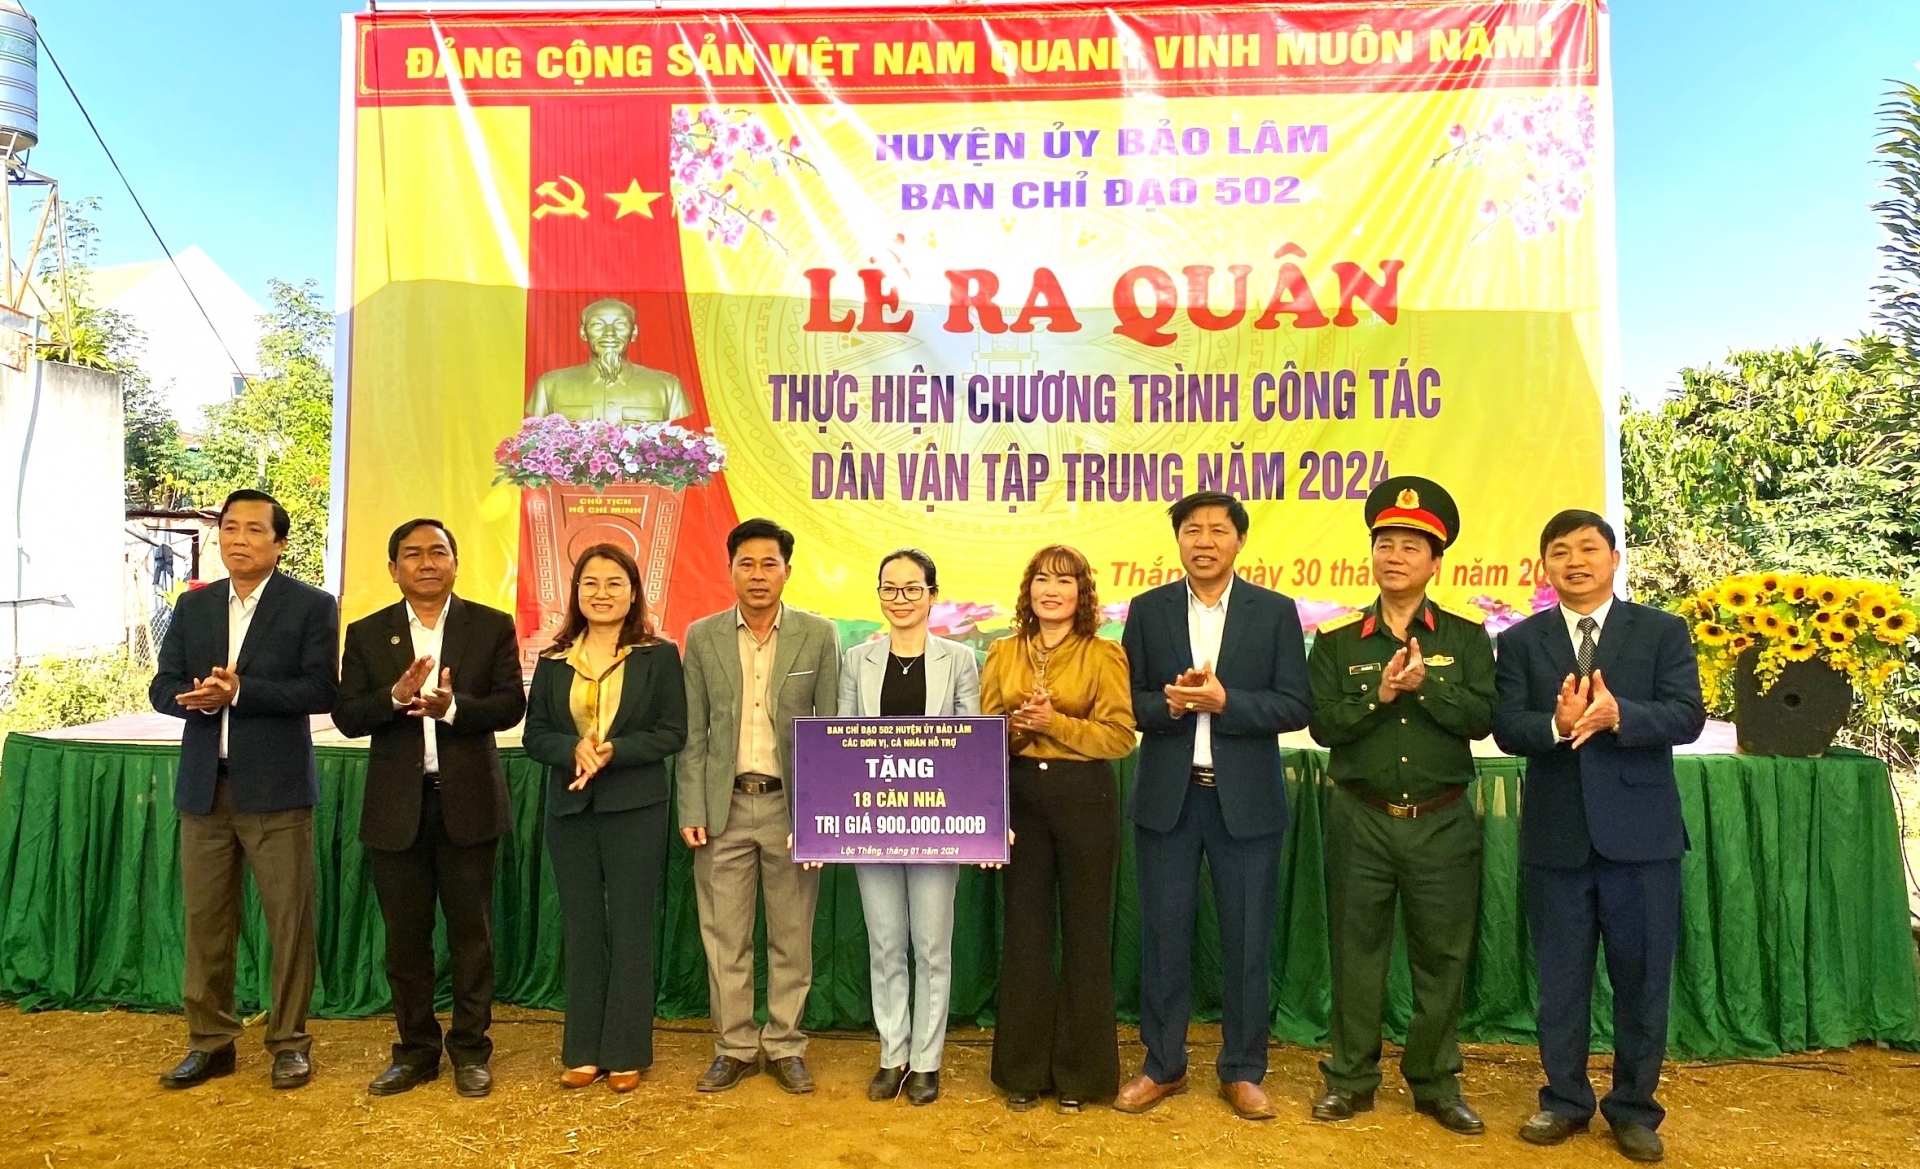 Lãnh đạo huyện Bảo Lâm trao biểu trưng xây dựng 18 căn nhà cho hộ khó khăn trên địa bàn thị trấn Lộc Thắng, với tổng trị giá 900 triệu đồng